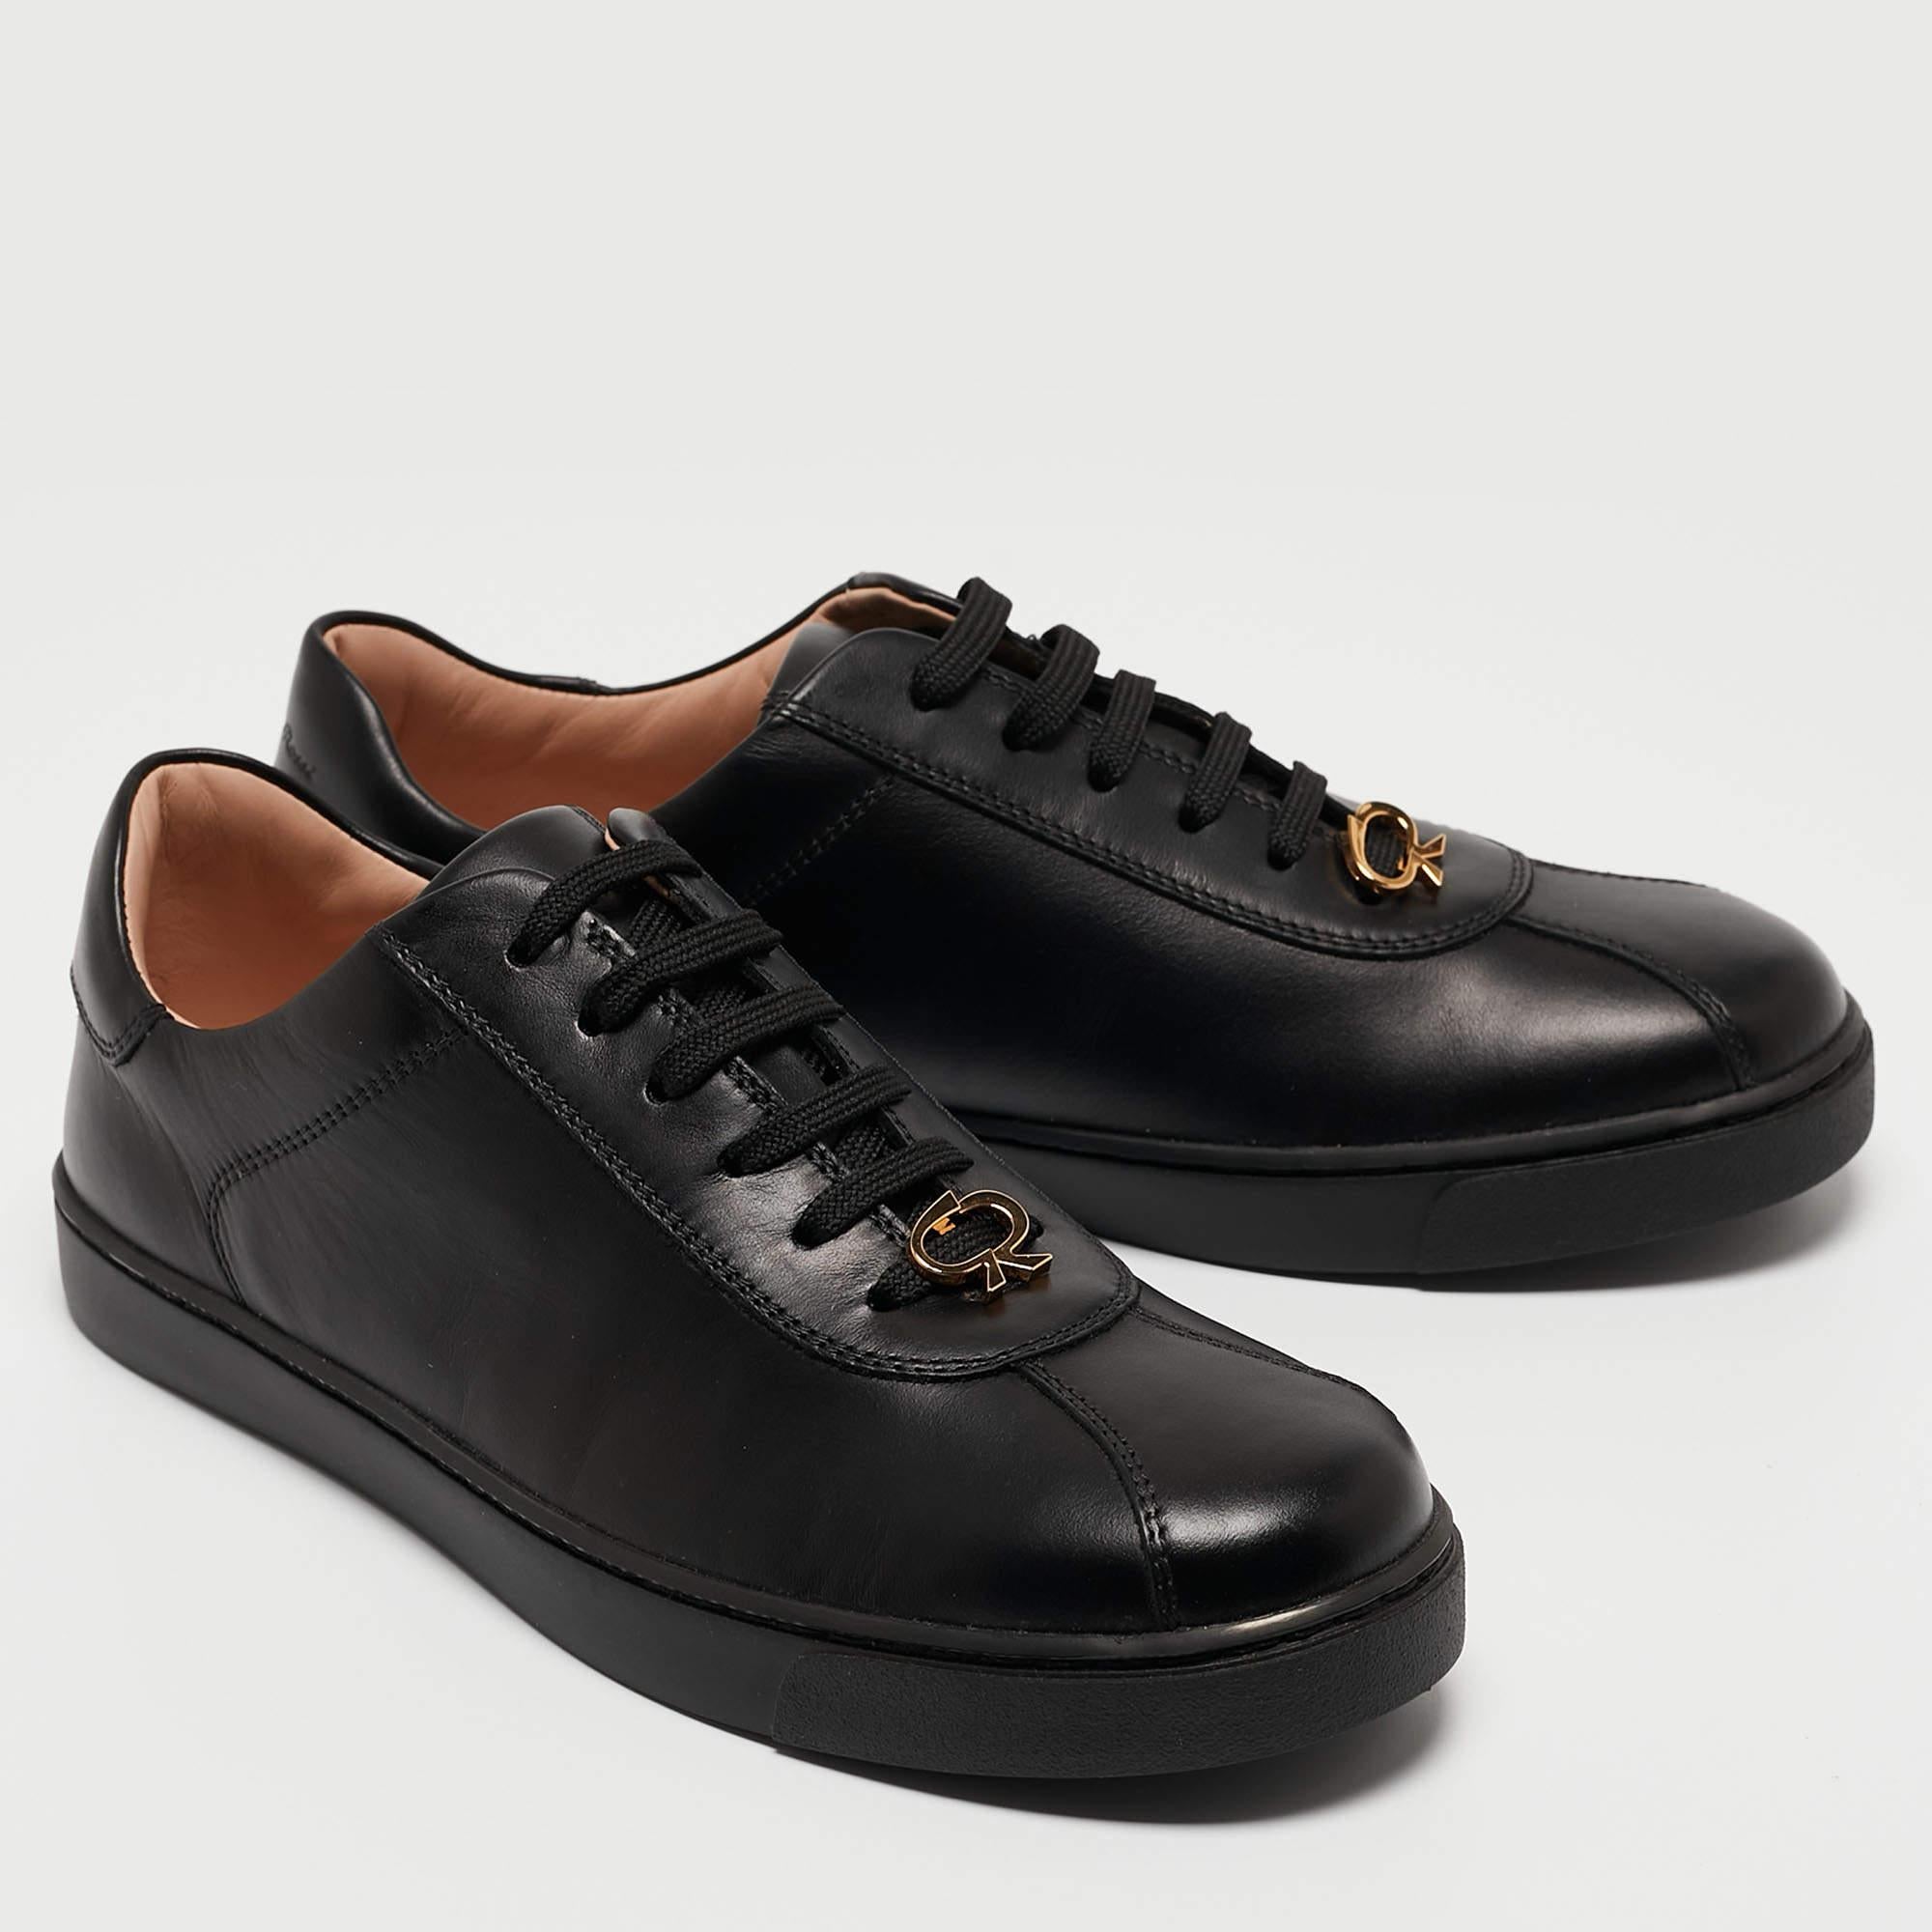 Gianvito Rossi Black Leather Low Top Sneakers Size 37.5 In New Condition For Sale In Dubai, Al Qouz 2